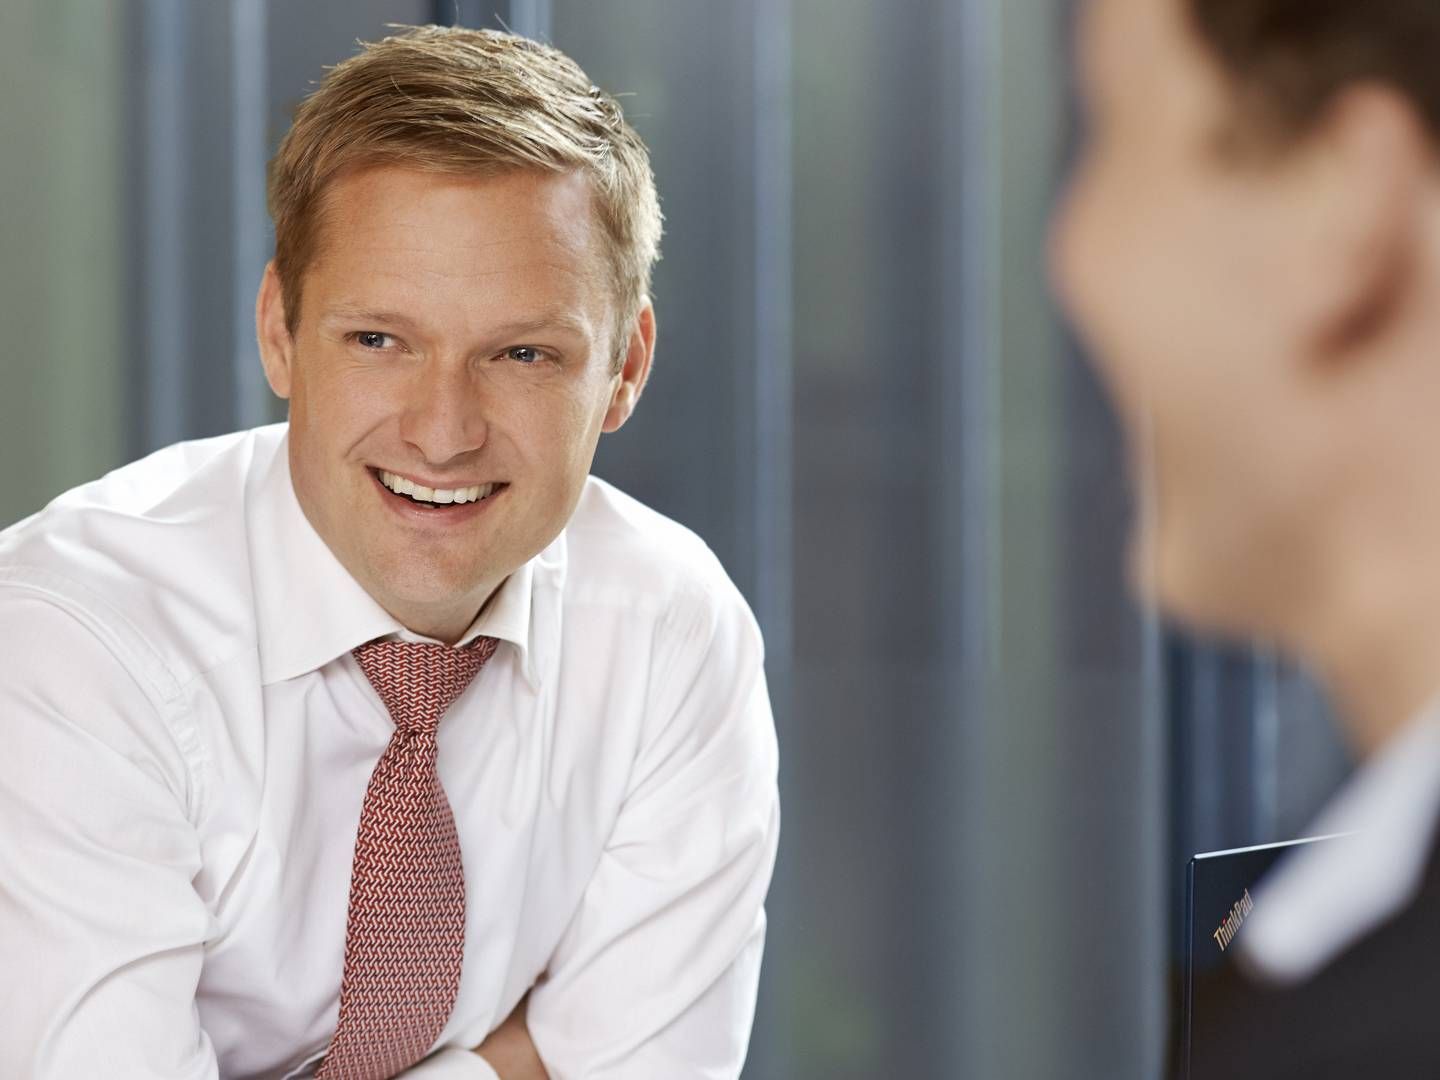 Thorsten Meyer Larsen, head of ESG at BankInvest | Photo: PR/Danmarks Nationalbank